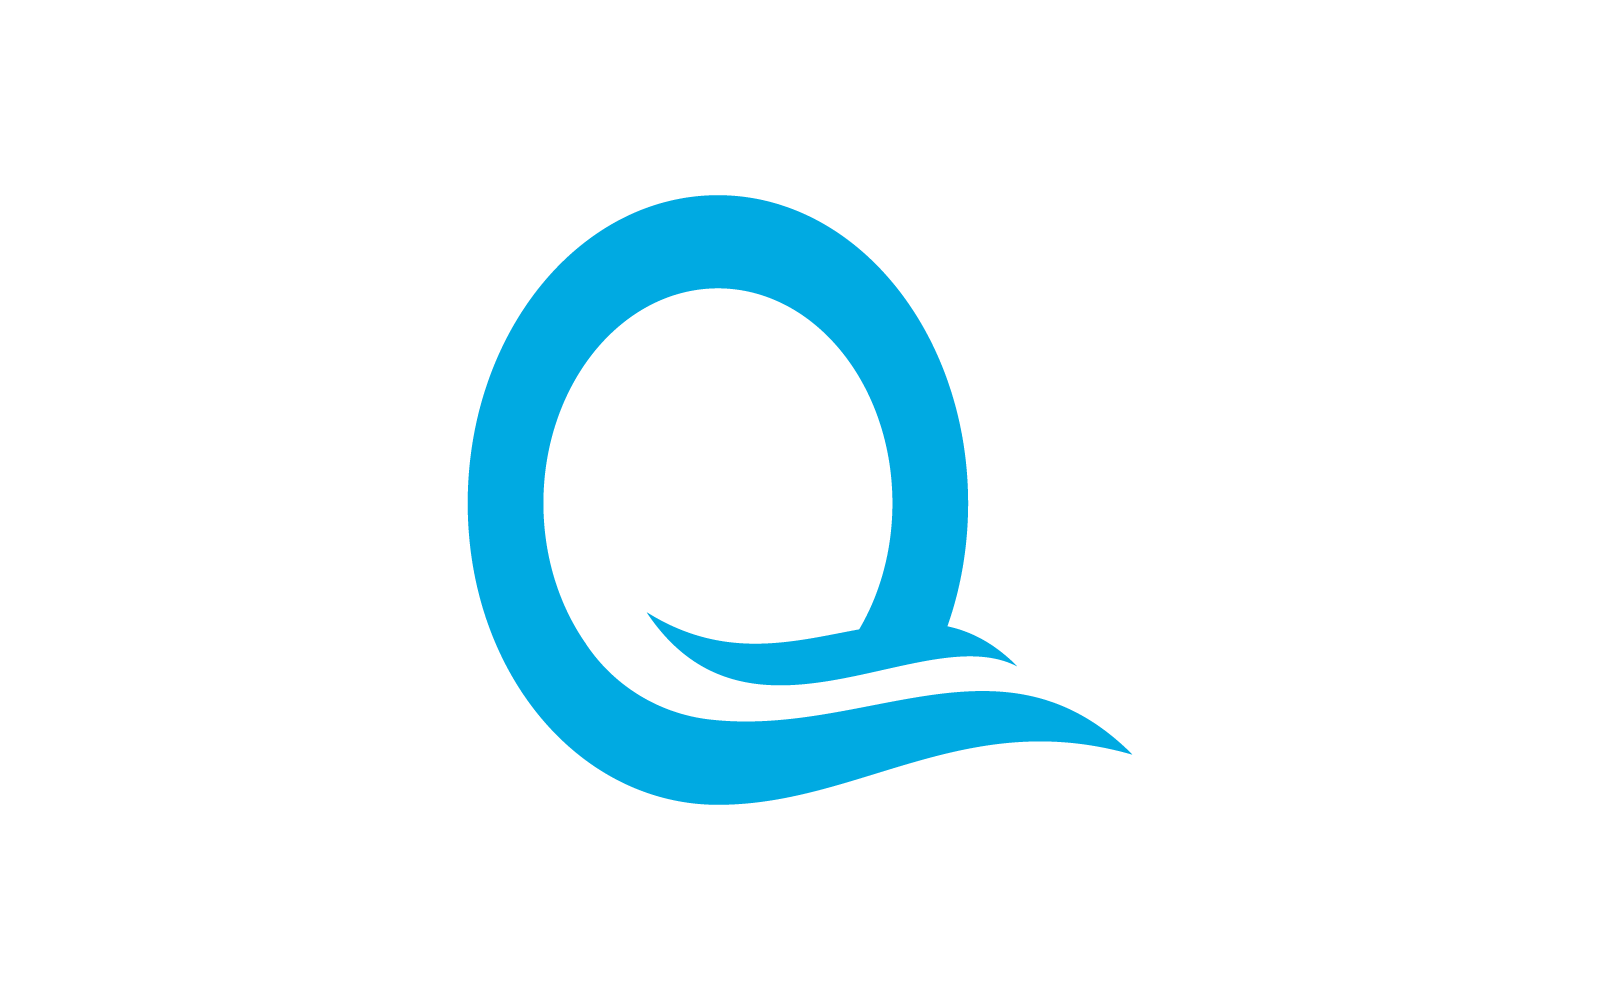 Vorlage für Wasserwellen-Logo mit anfänglichem Q-Buchstaben, Vektor